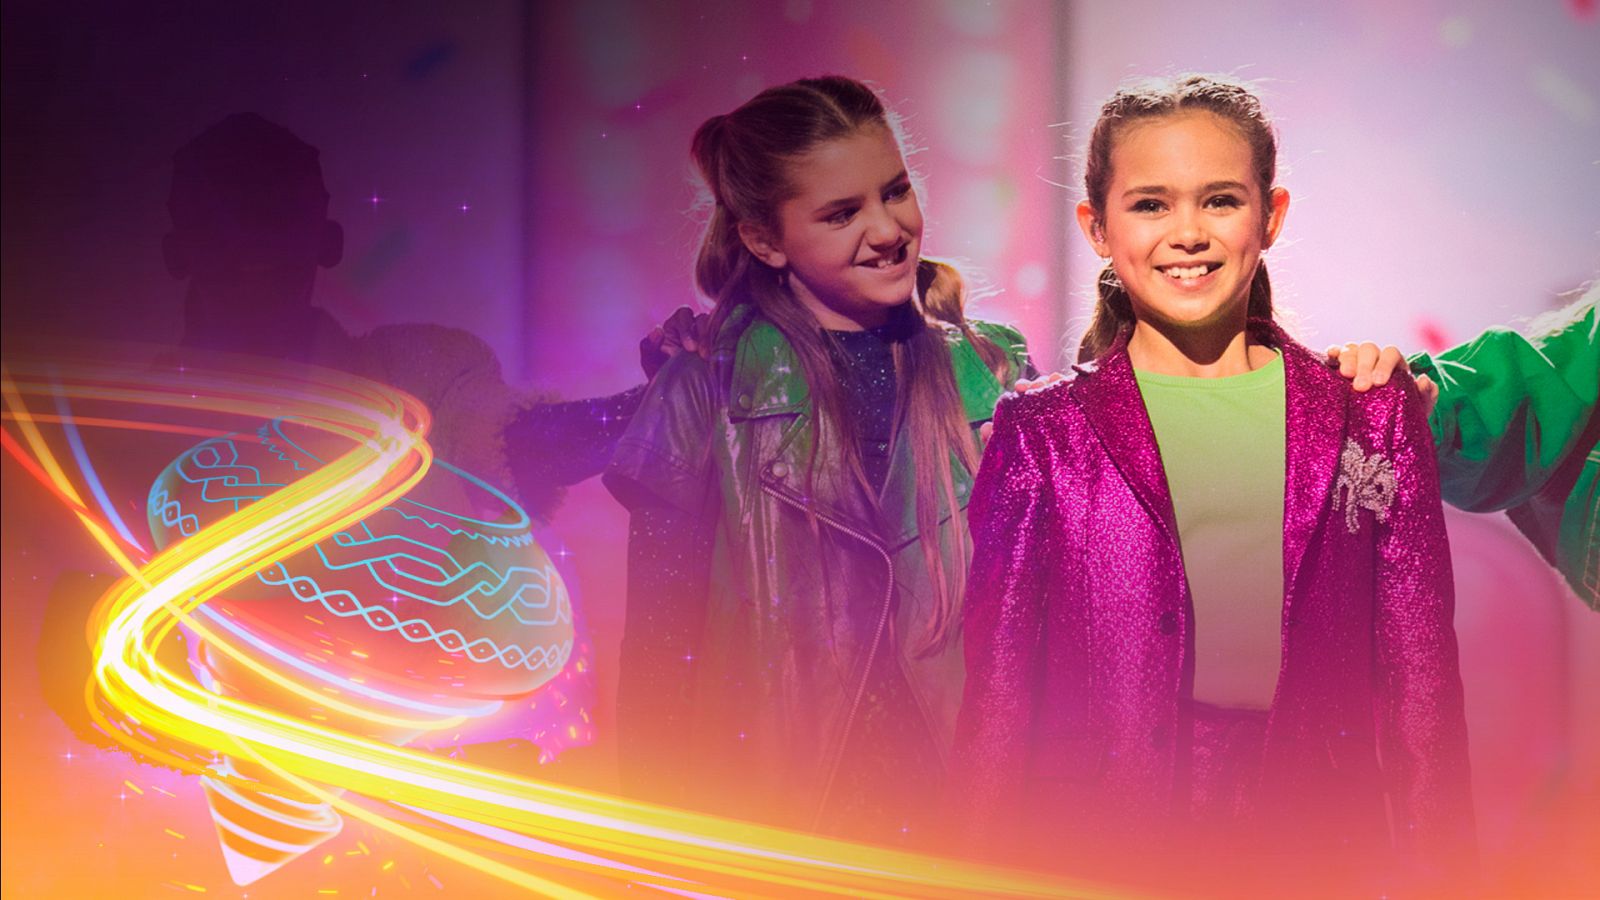 Eurovisión Junior 2022 - Países Bajos: Luna canta "La festa" en la final - Ver ahora